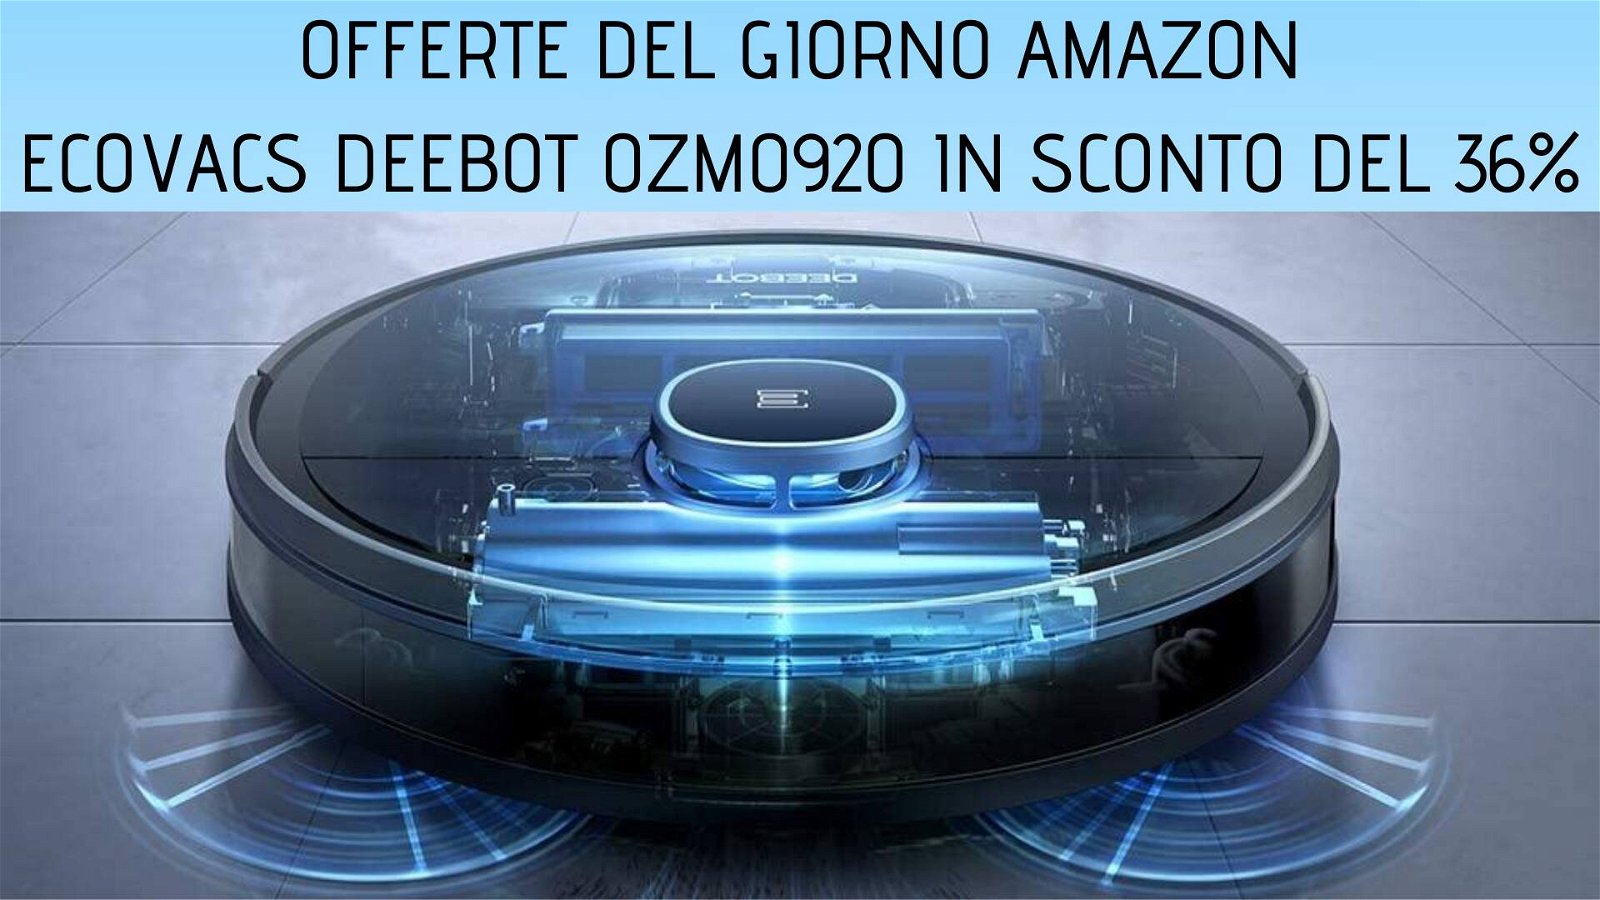 Immagine di Offerte del giorno Amazon: robot aspirapolvere Ecovacs Deeboot Ozmo920 in sconto del 36%!